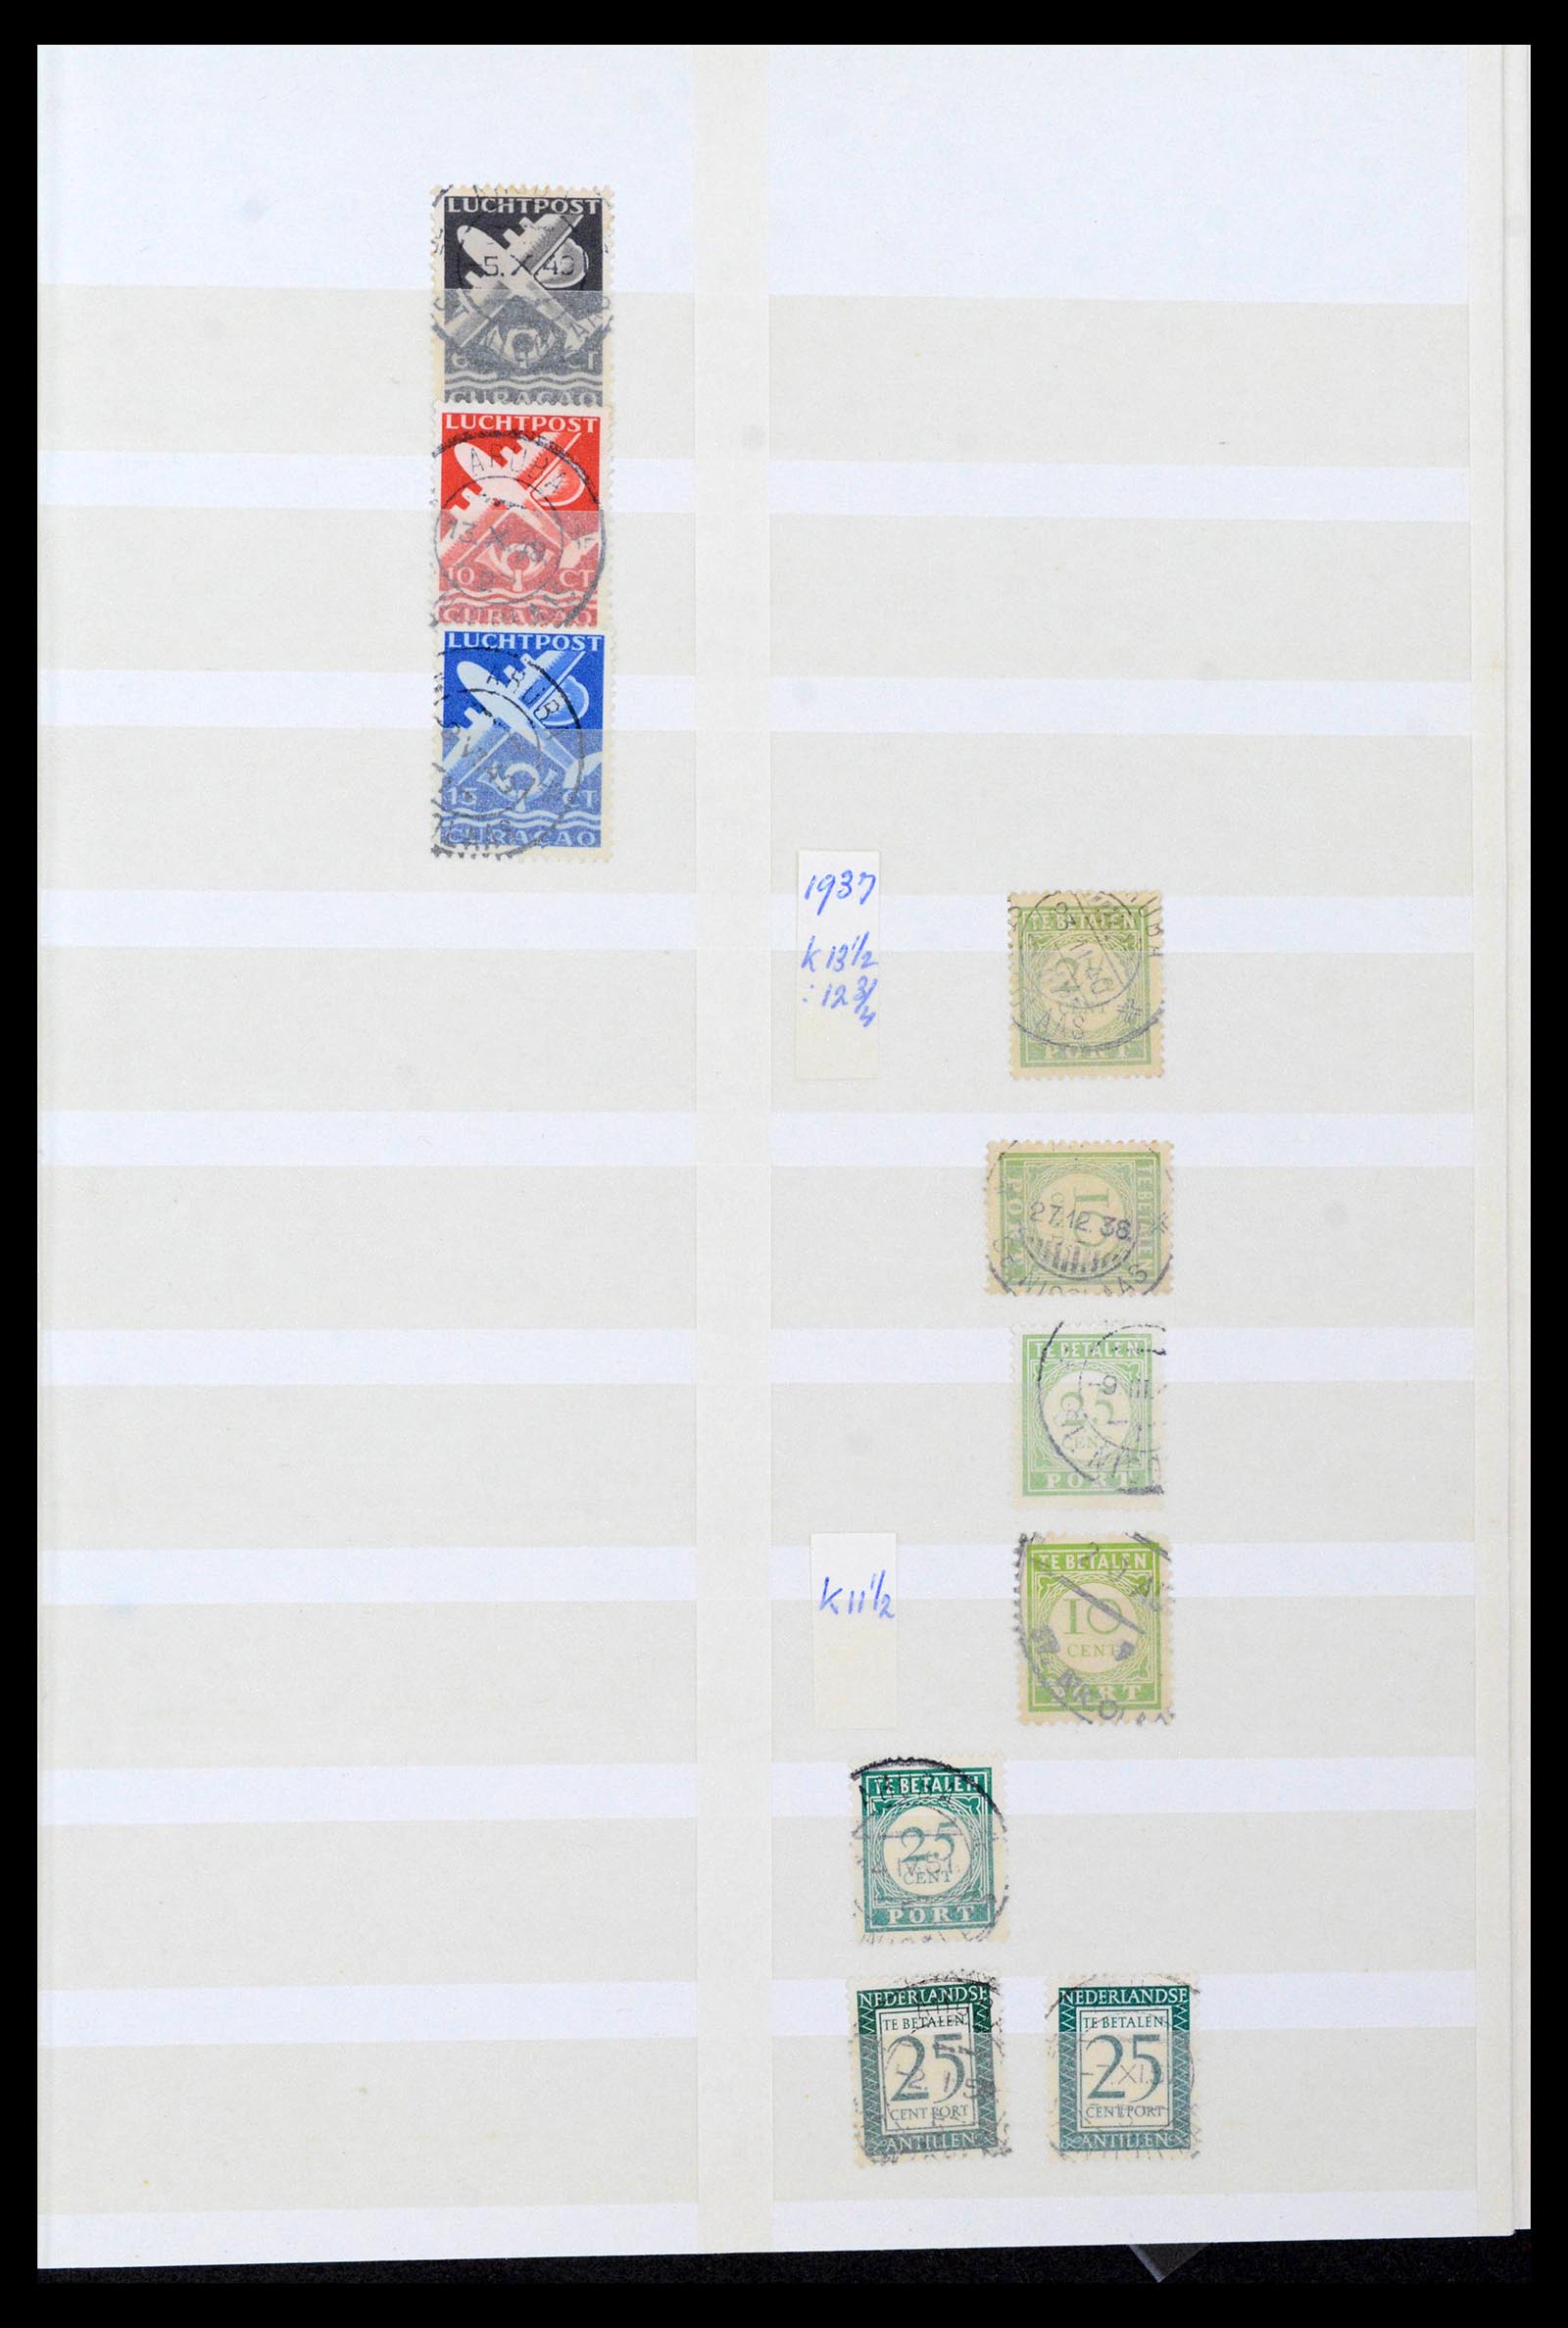 39541 0016 - Postzegelverzameling 39541 Curaçao/Antillen stempels 1873-1970.